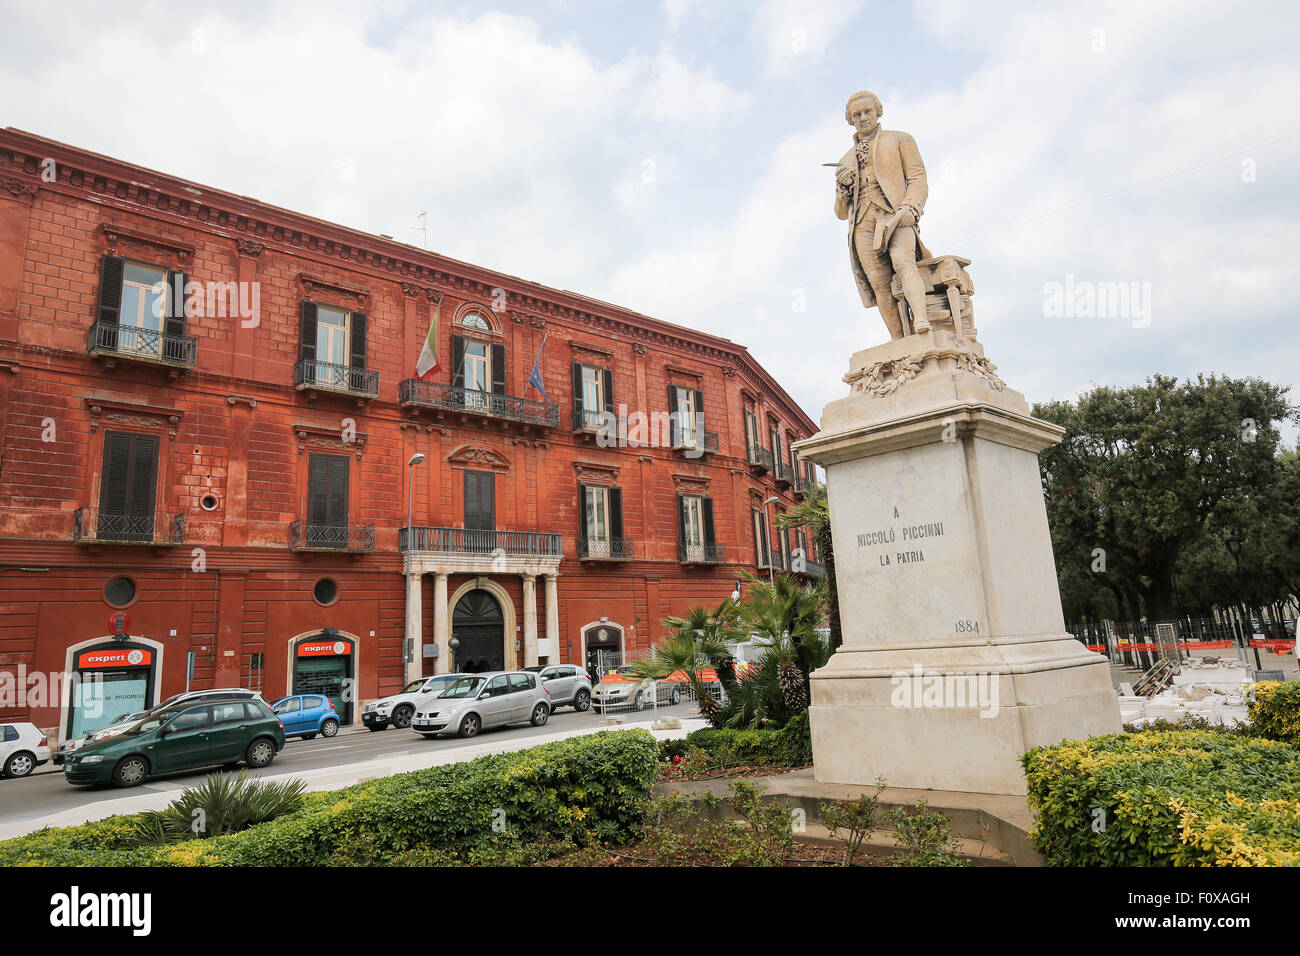 BARI, ITALY - MARCH 16, 2015: Statue of the 18th Century Italian composer Niccolo Piccinni at the Teatro Piccinni in Bari, Italy Stock Photo